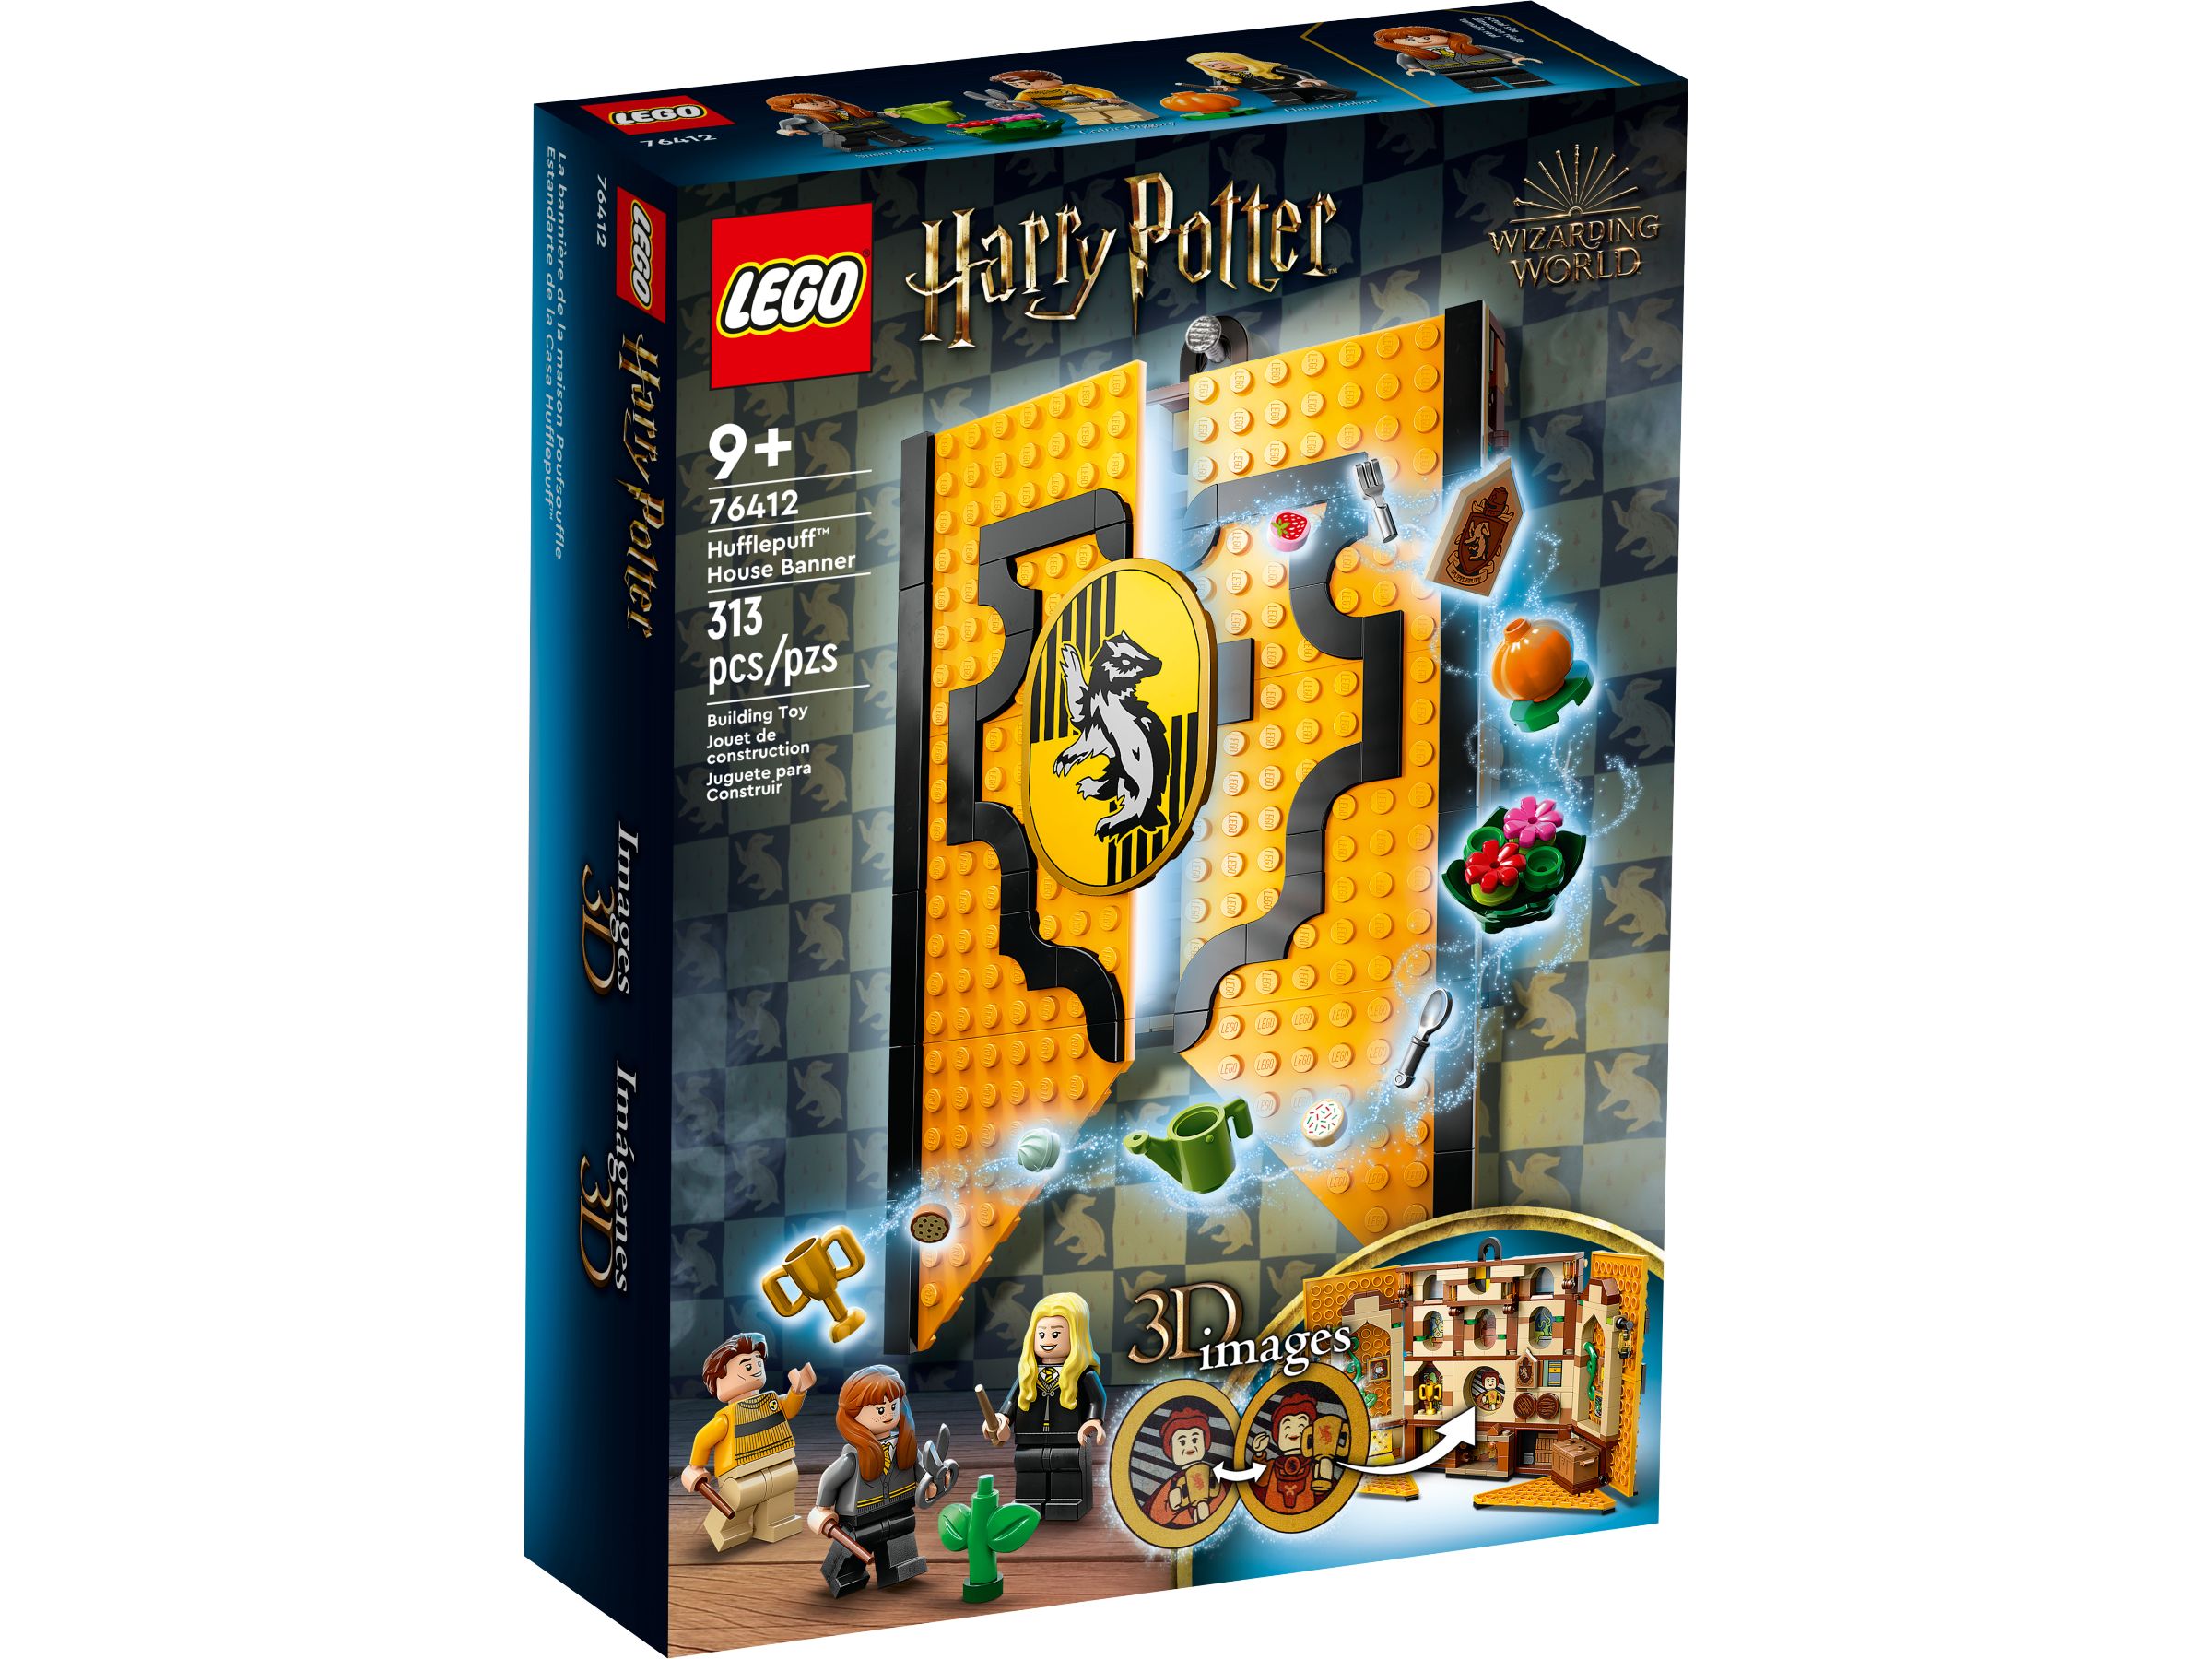 LEGO Harry Potter 5008138 Paket: Treue und Zielstrebigkeit LEGO_76412_alt1.jpg